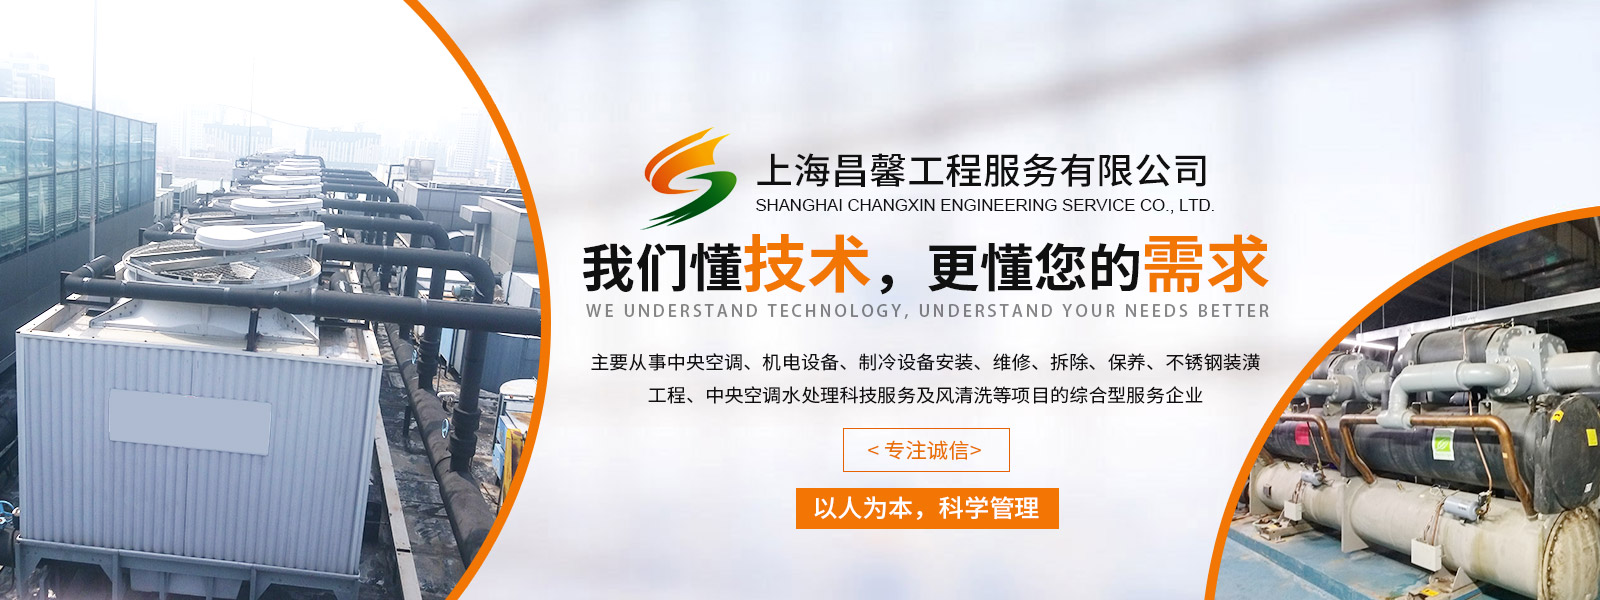 上海昌馨工程服務有限公司  021-58356760